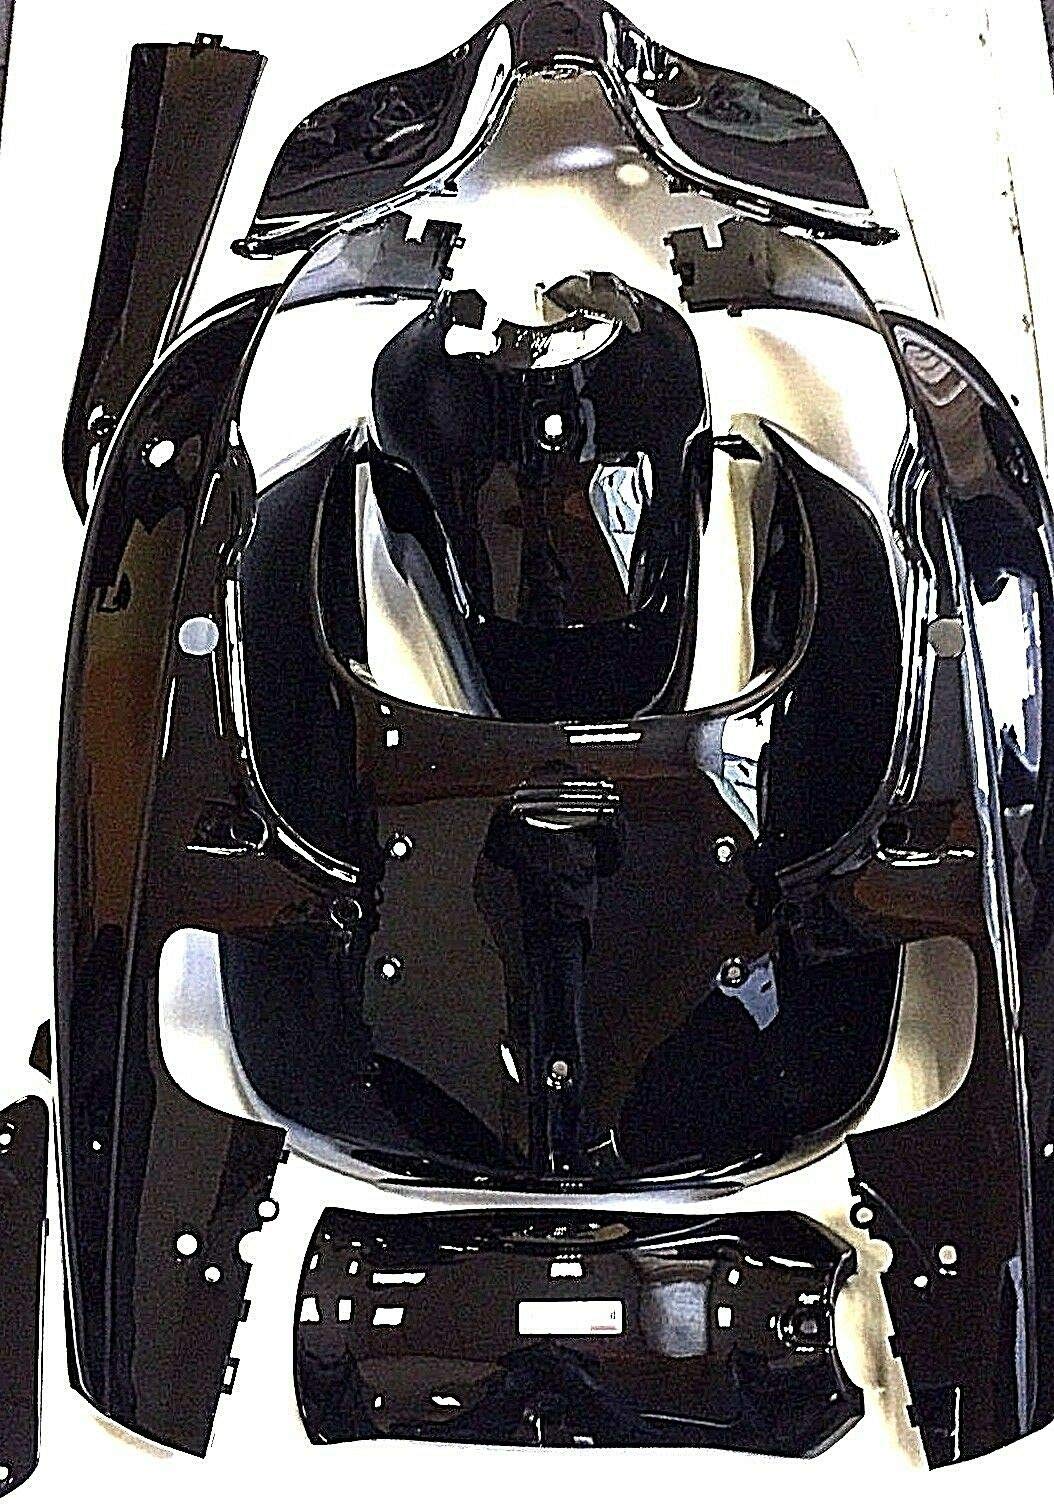 Komplette Verkleidung schwarz glänzend ZNEN Nova Roller Motorroller Retro von Casabike